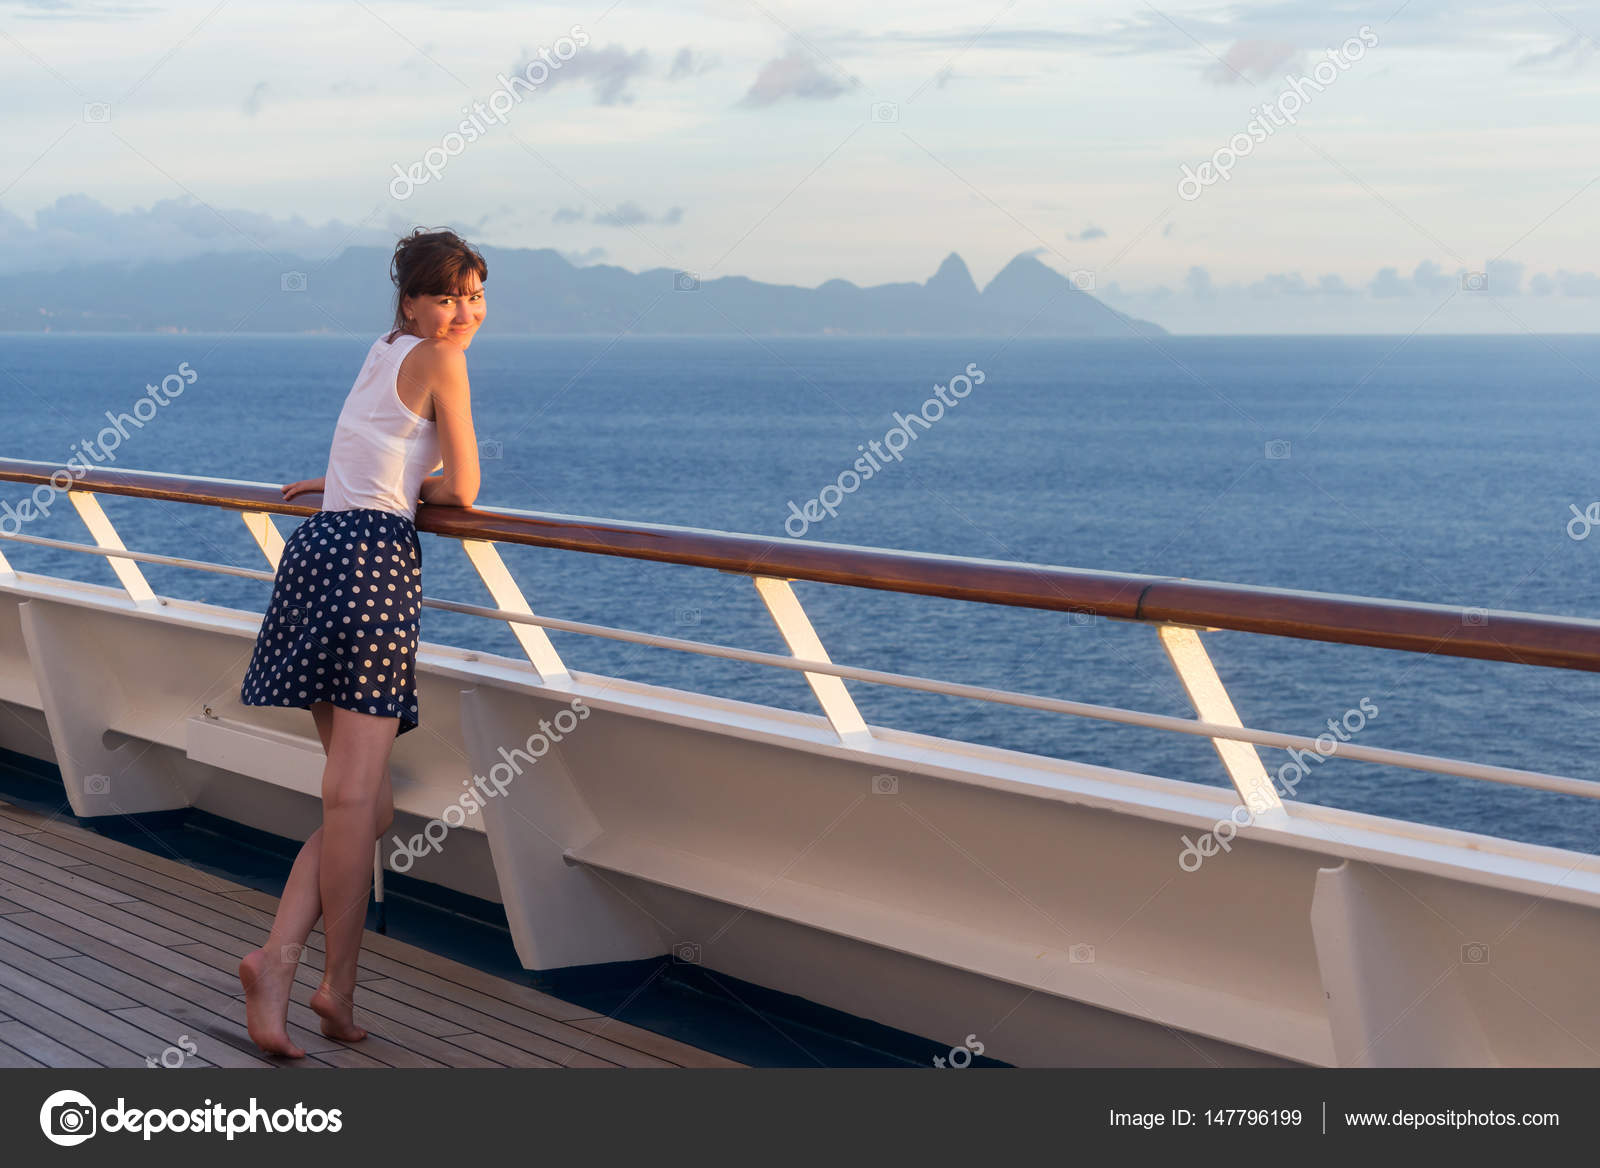 Лежа на палубе. Девушка в платье на палубе. Девушка на палубе стоит. Девушка на палубе лайнера. Женщина на палубе корабля.